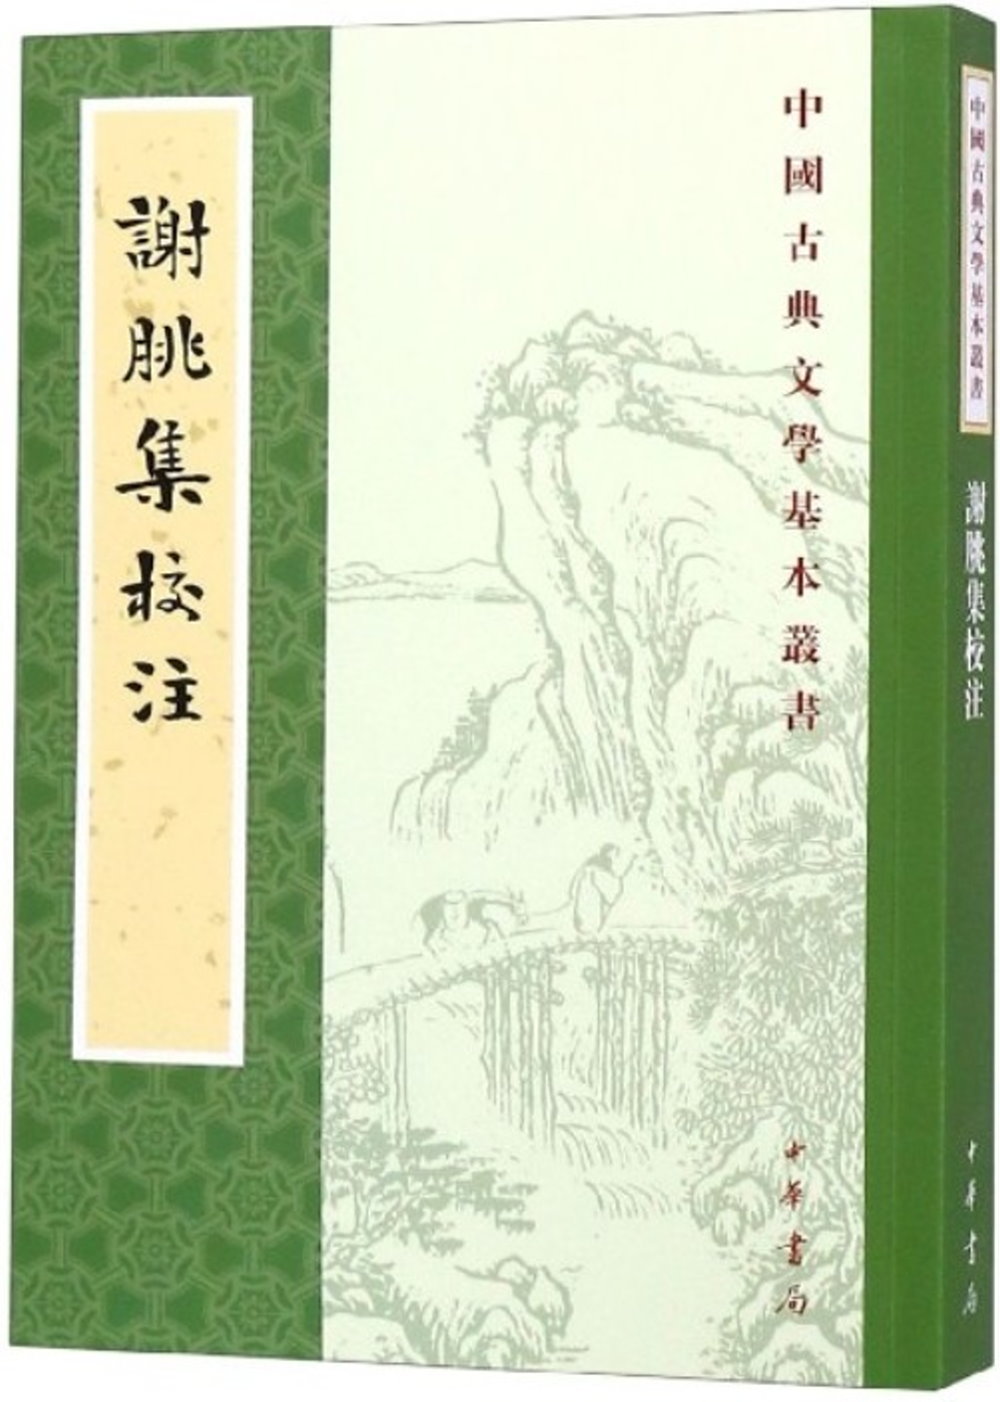 中國古典文學基本叢書：謝朓集校注